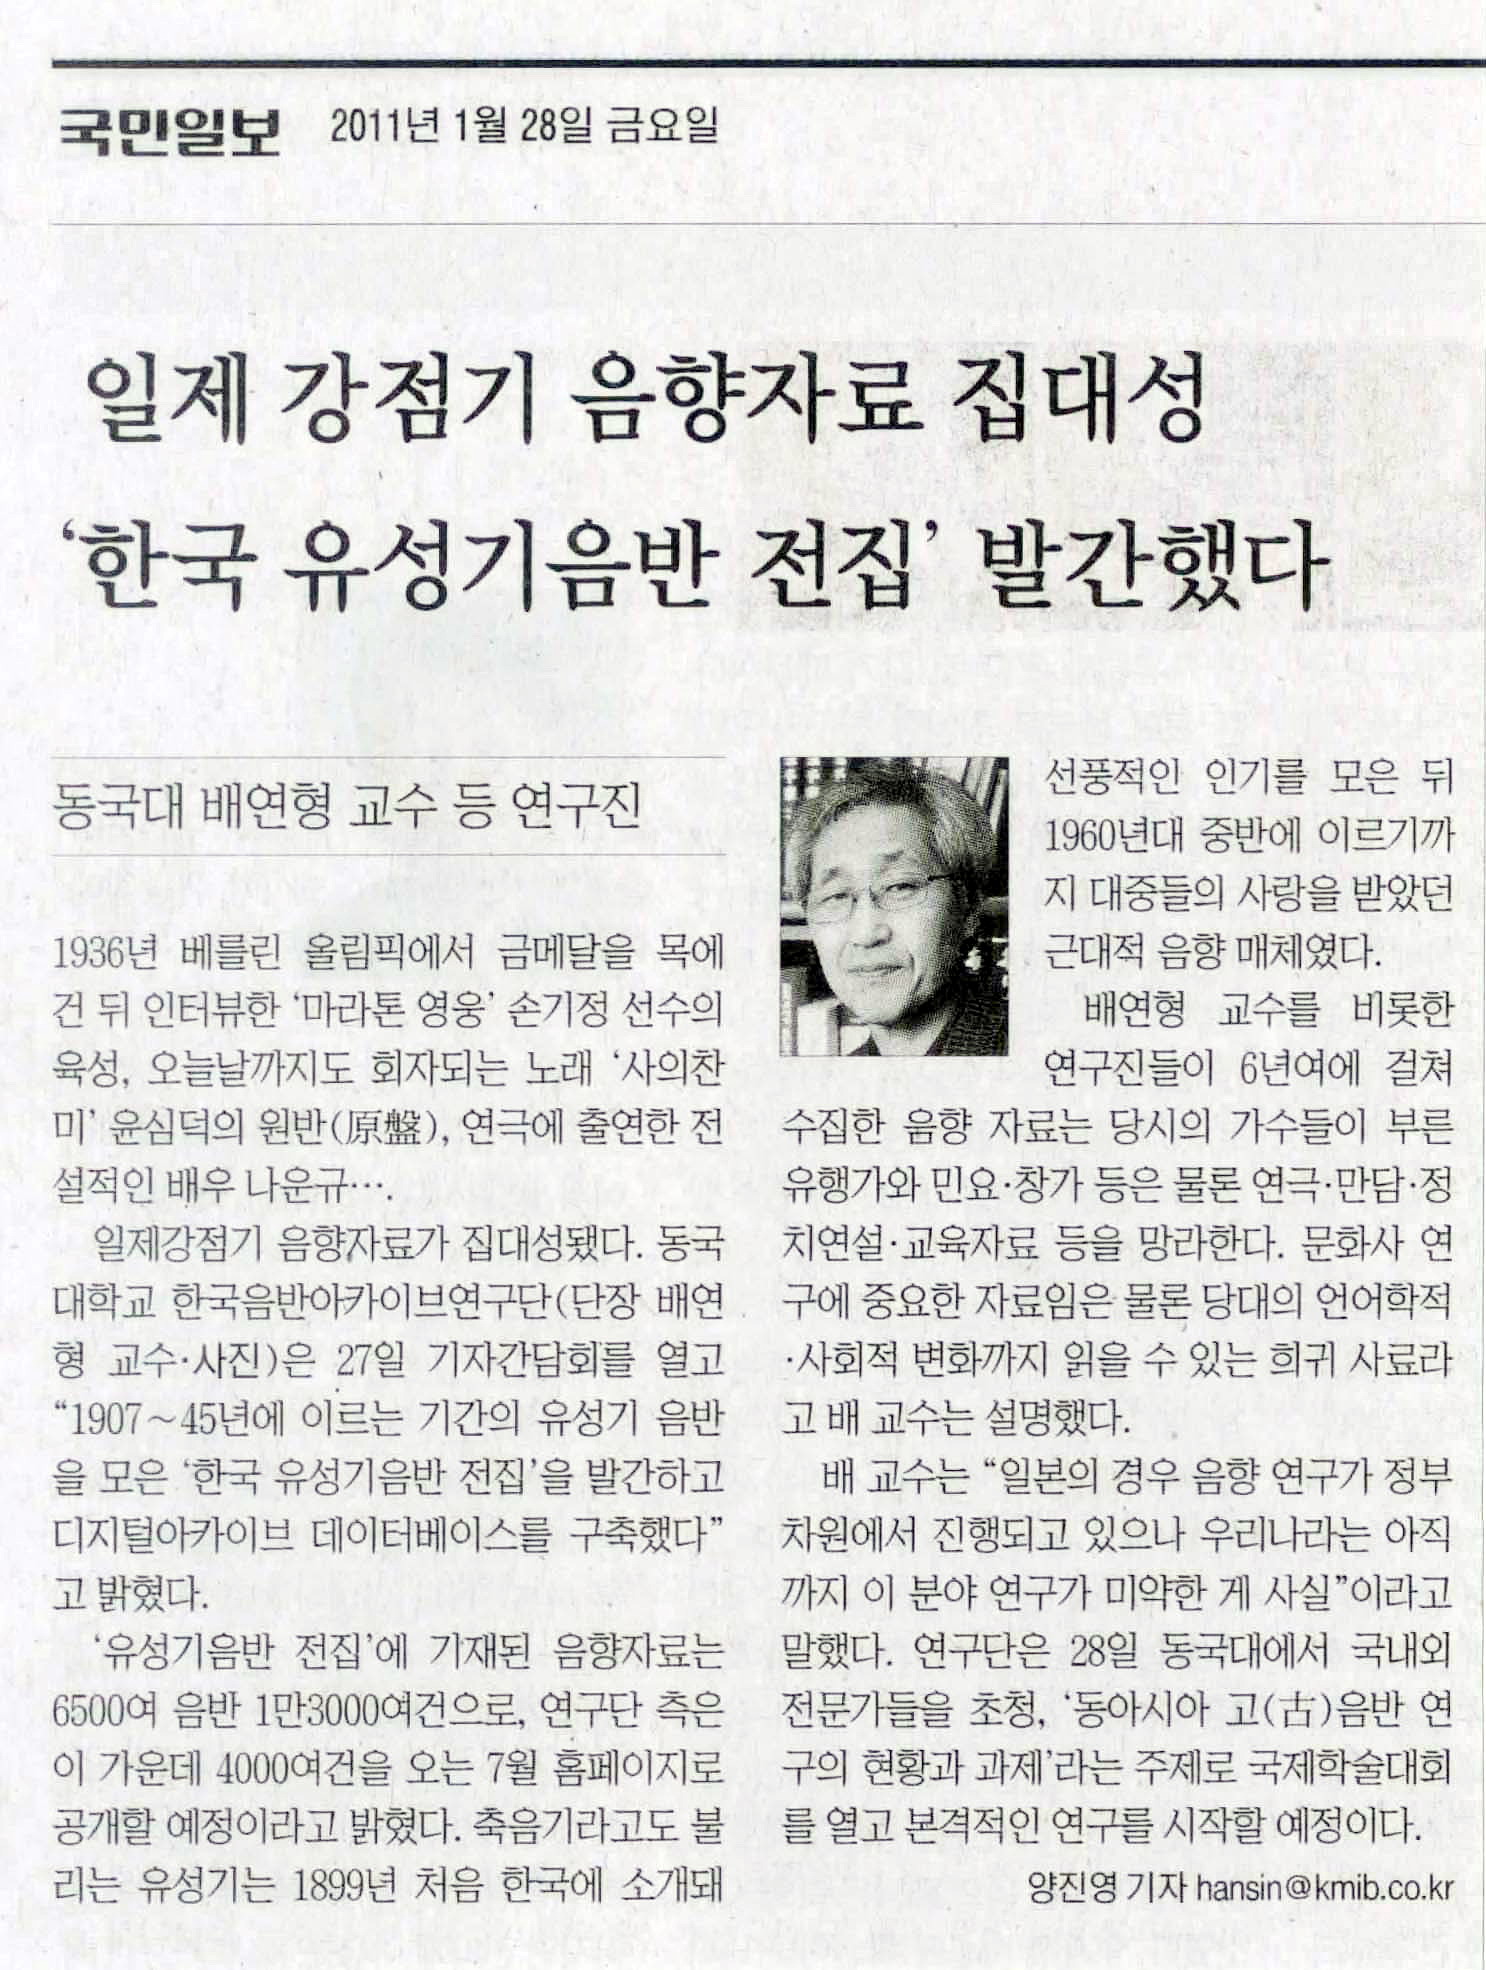 2011-01-28-국민일보-일제강점기 음향자료 집대성.jpg